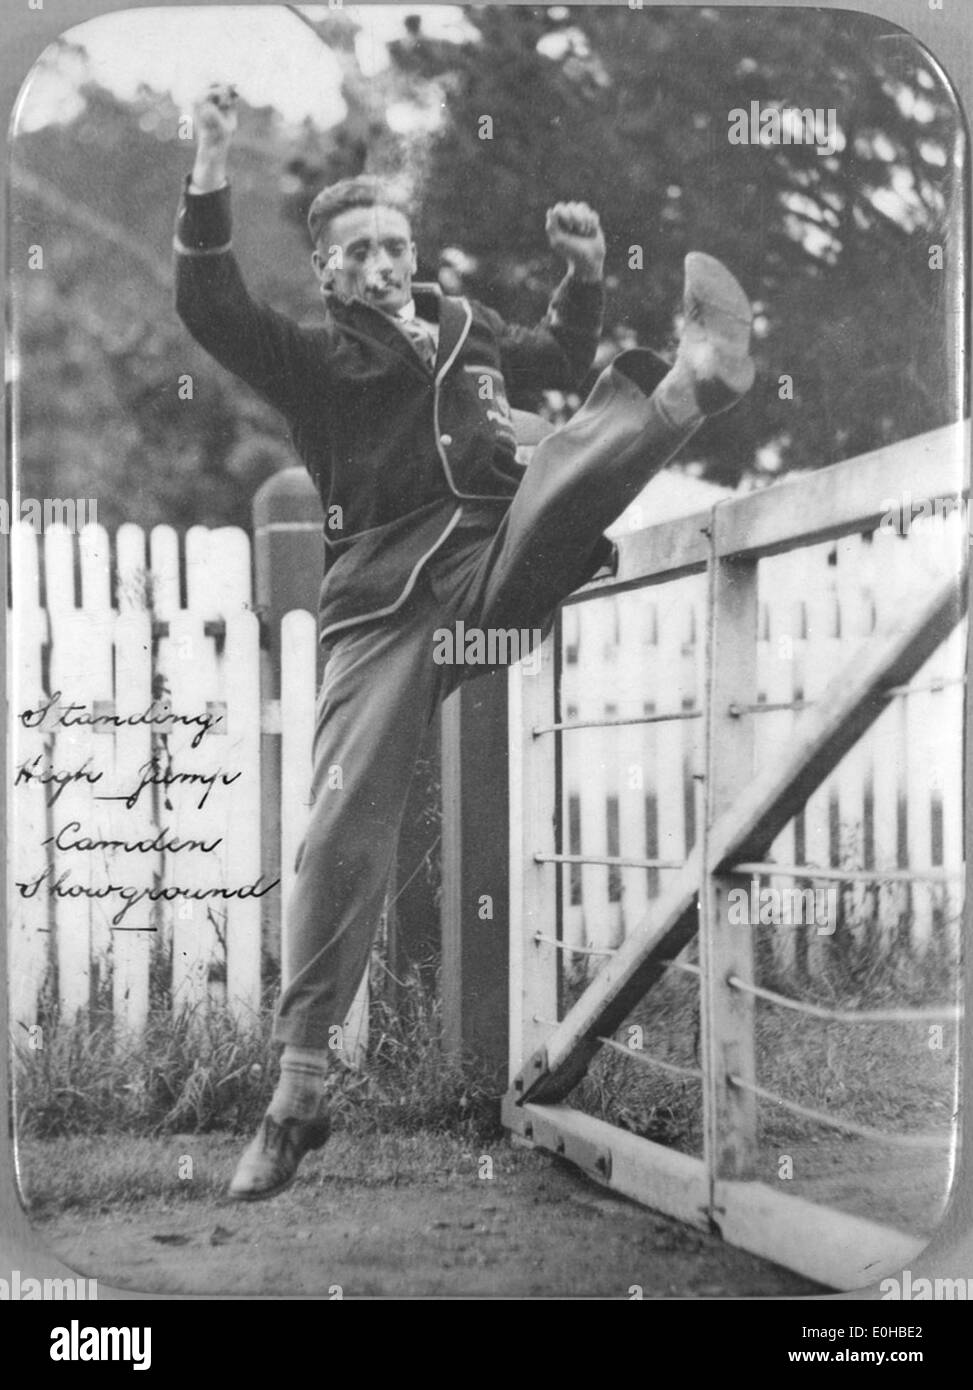 Athlet Nick Winter durchführen eine stehende Hochsprung, Camden Showground, New-South.Wales, ca. 1925. Stockfoto